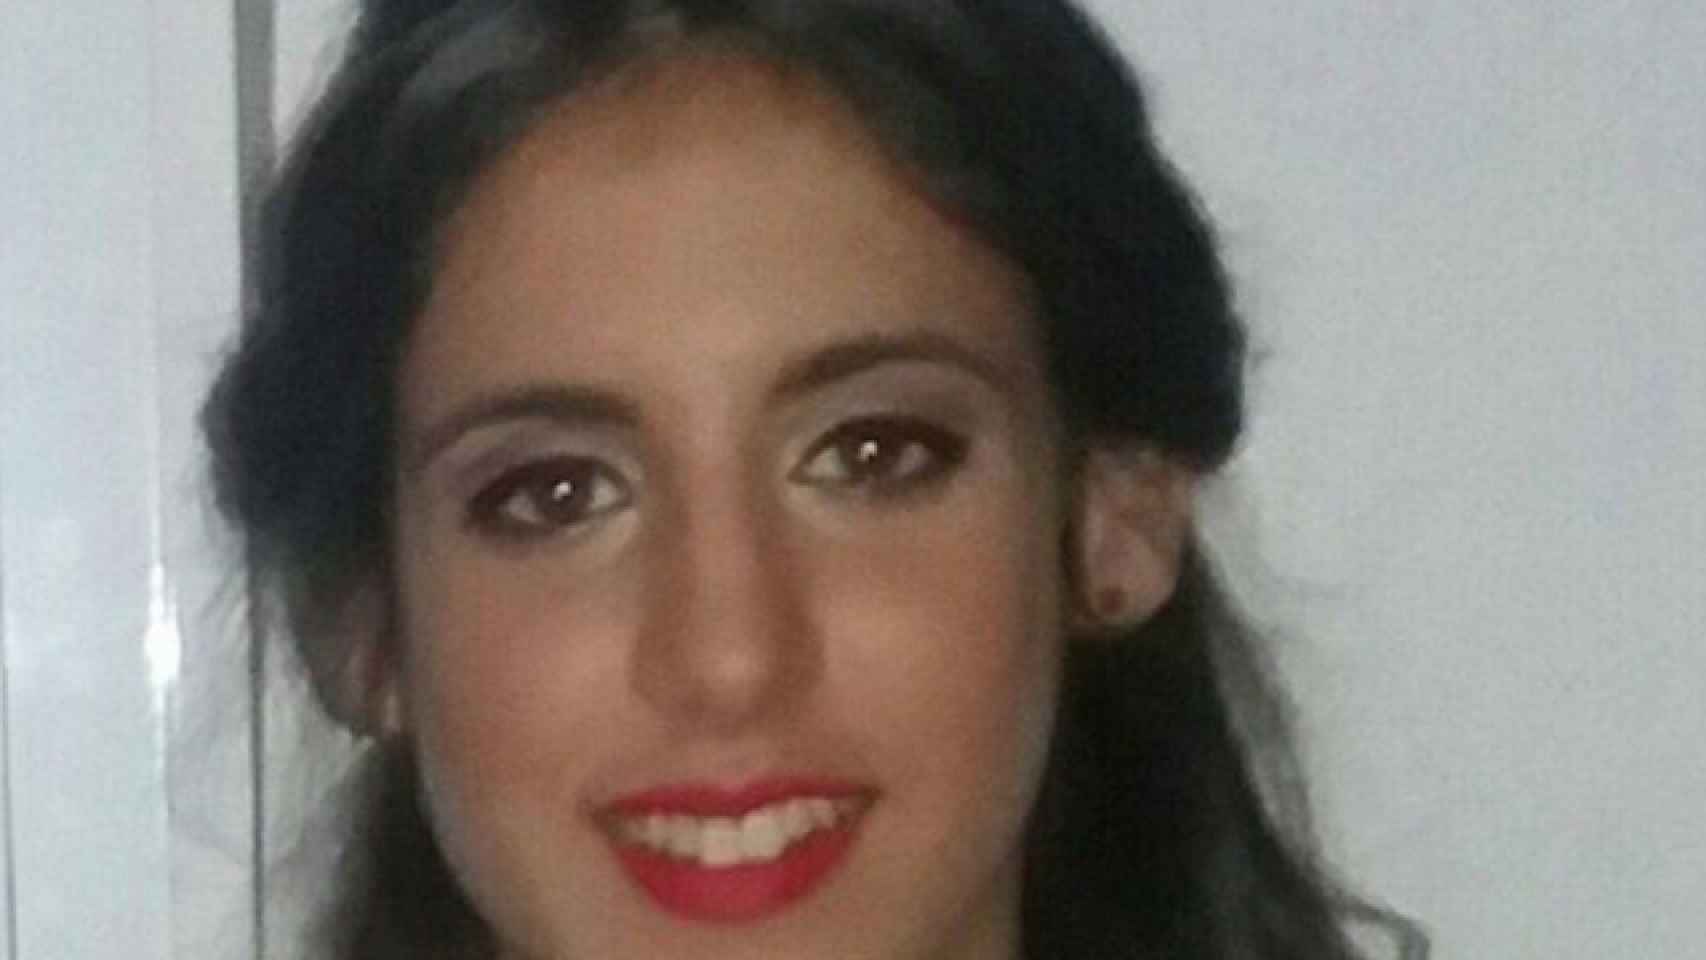 María Adela Rodríguez desapareció el domingo en Huelva